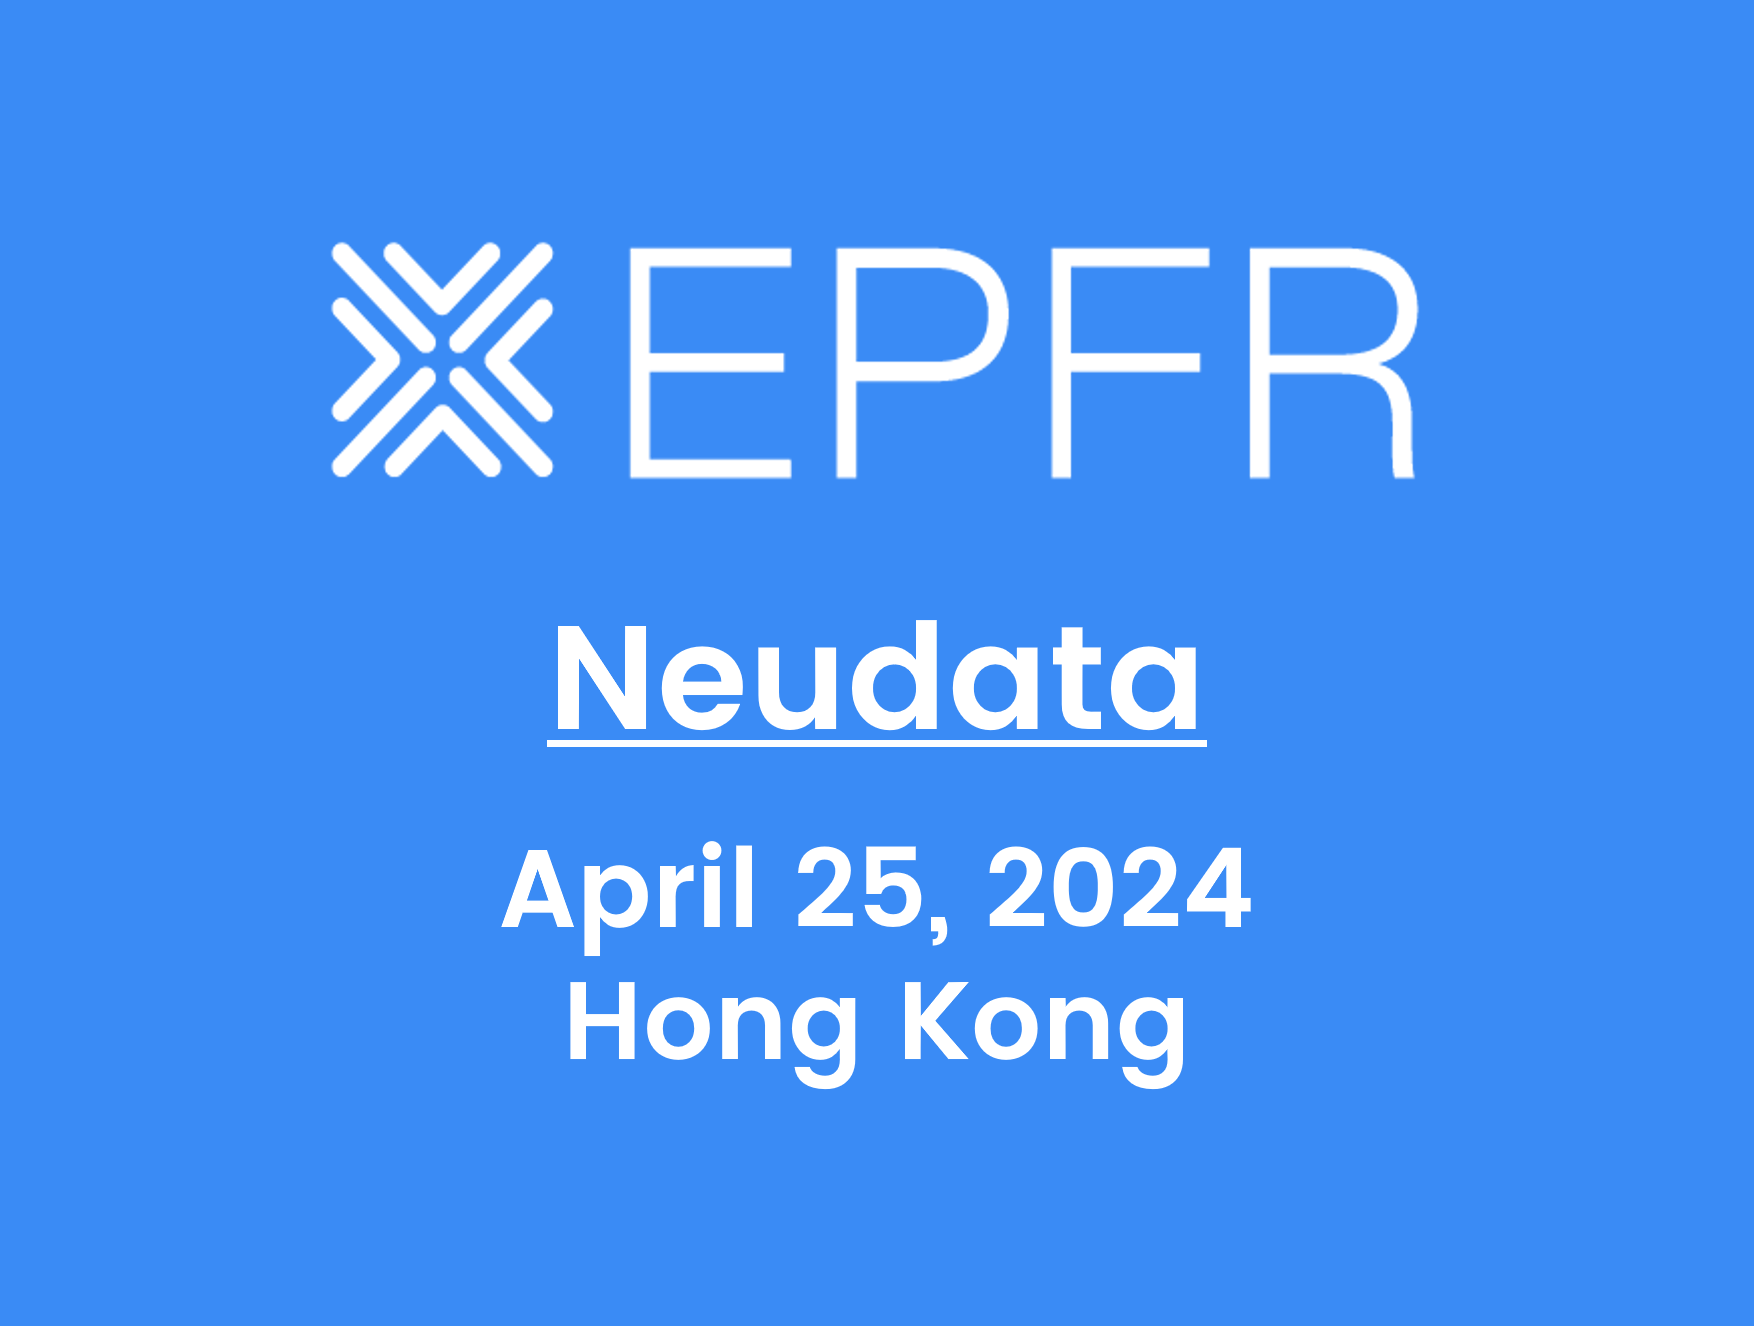 "Neudata April 25, 2024, Hong Kong"